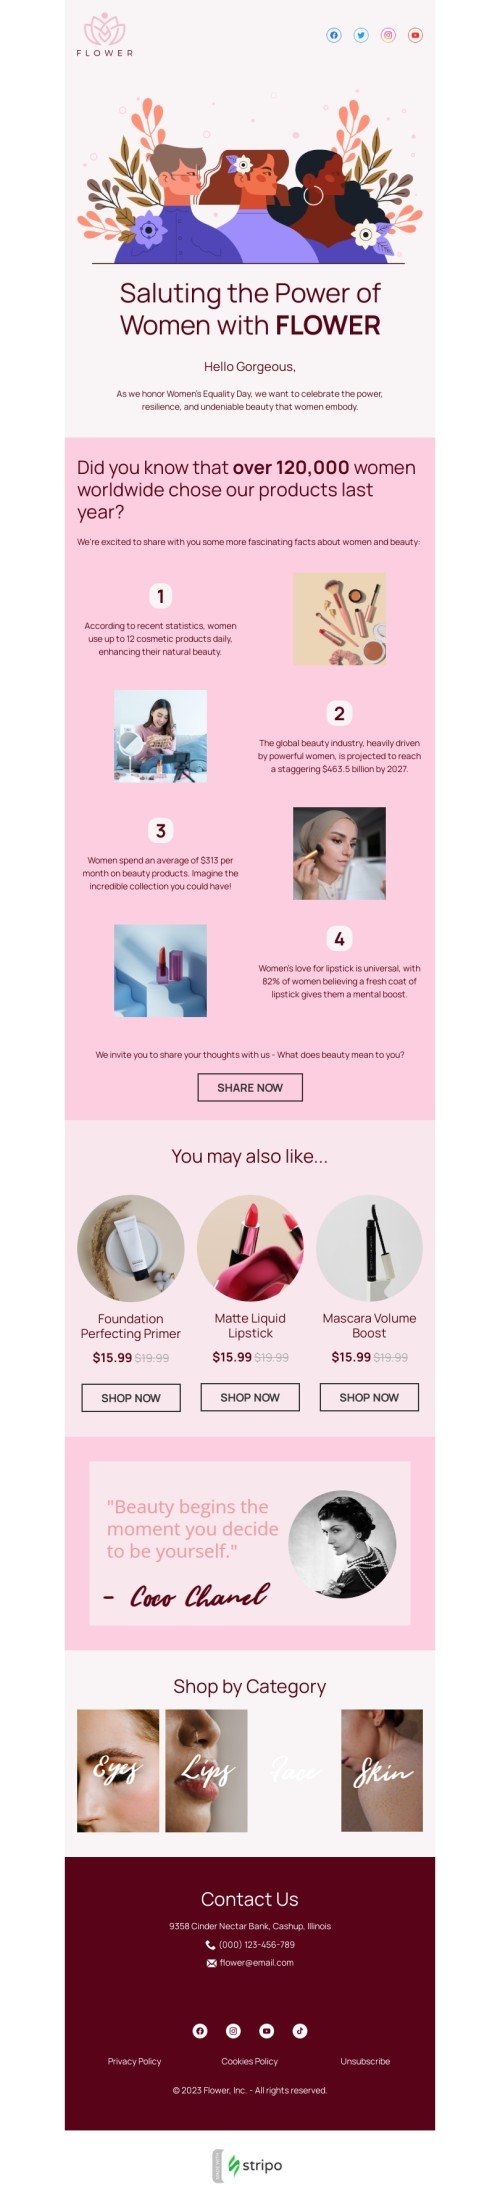 Der Tag der Gleichstellung der Frau E-Mail-Vorlage «Hommage an die Macht der Frauen» für Beauty & Pflege-Branche Ansicht auf Mobilgeräten